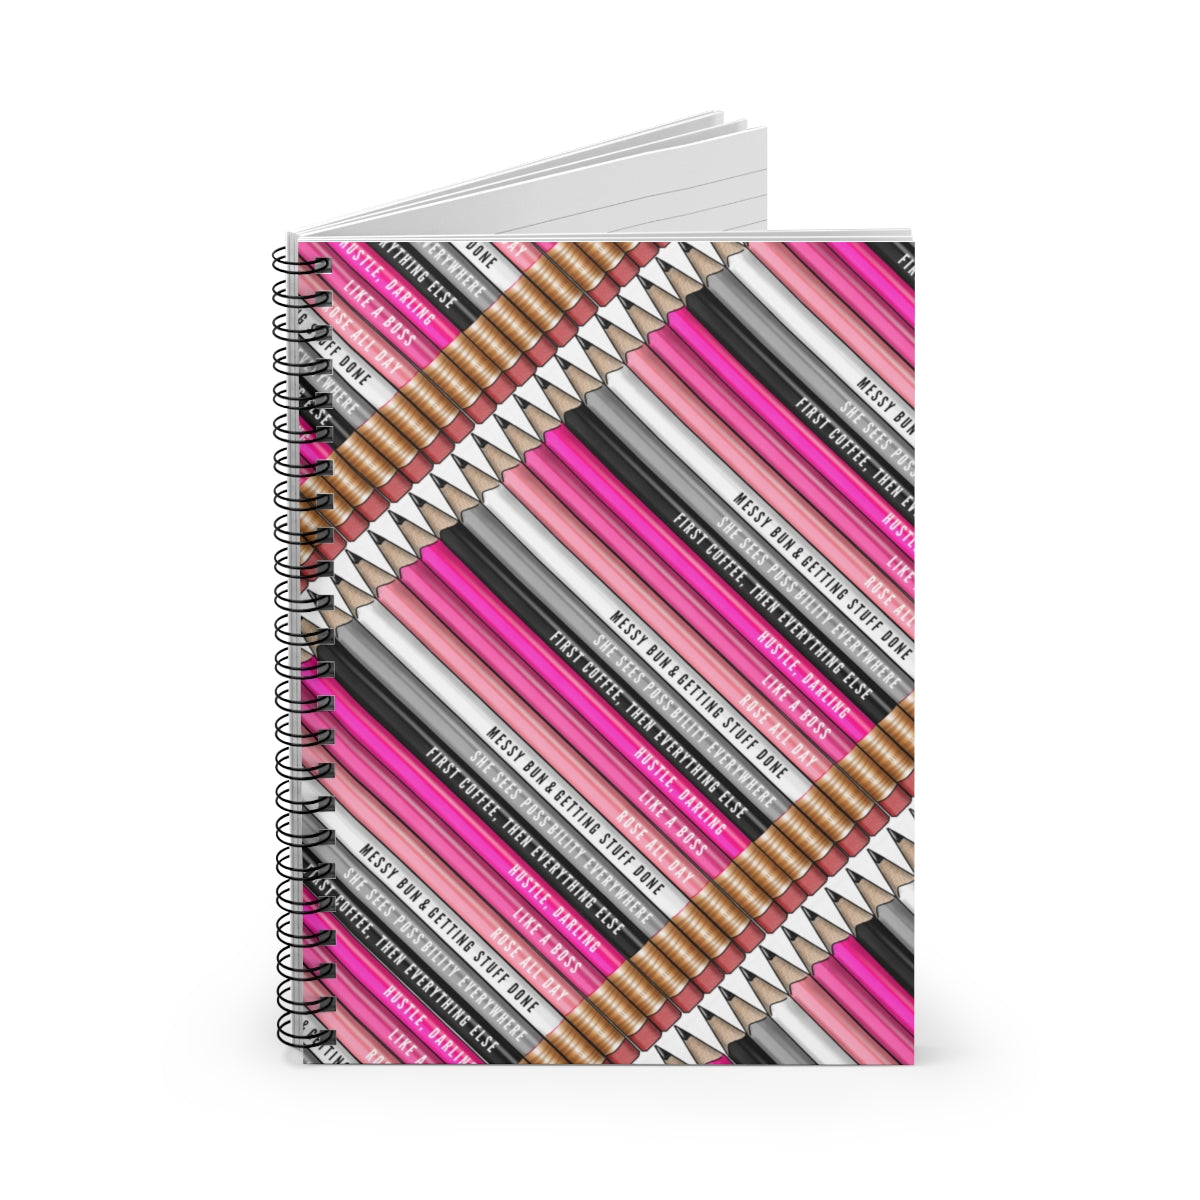 Motivational Pencils Spiral Notebook